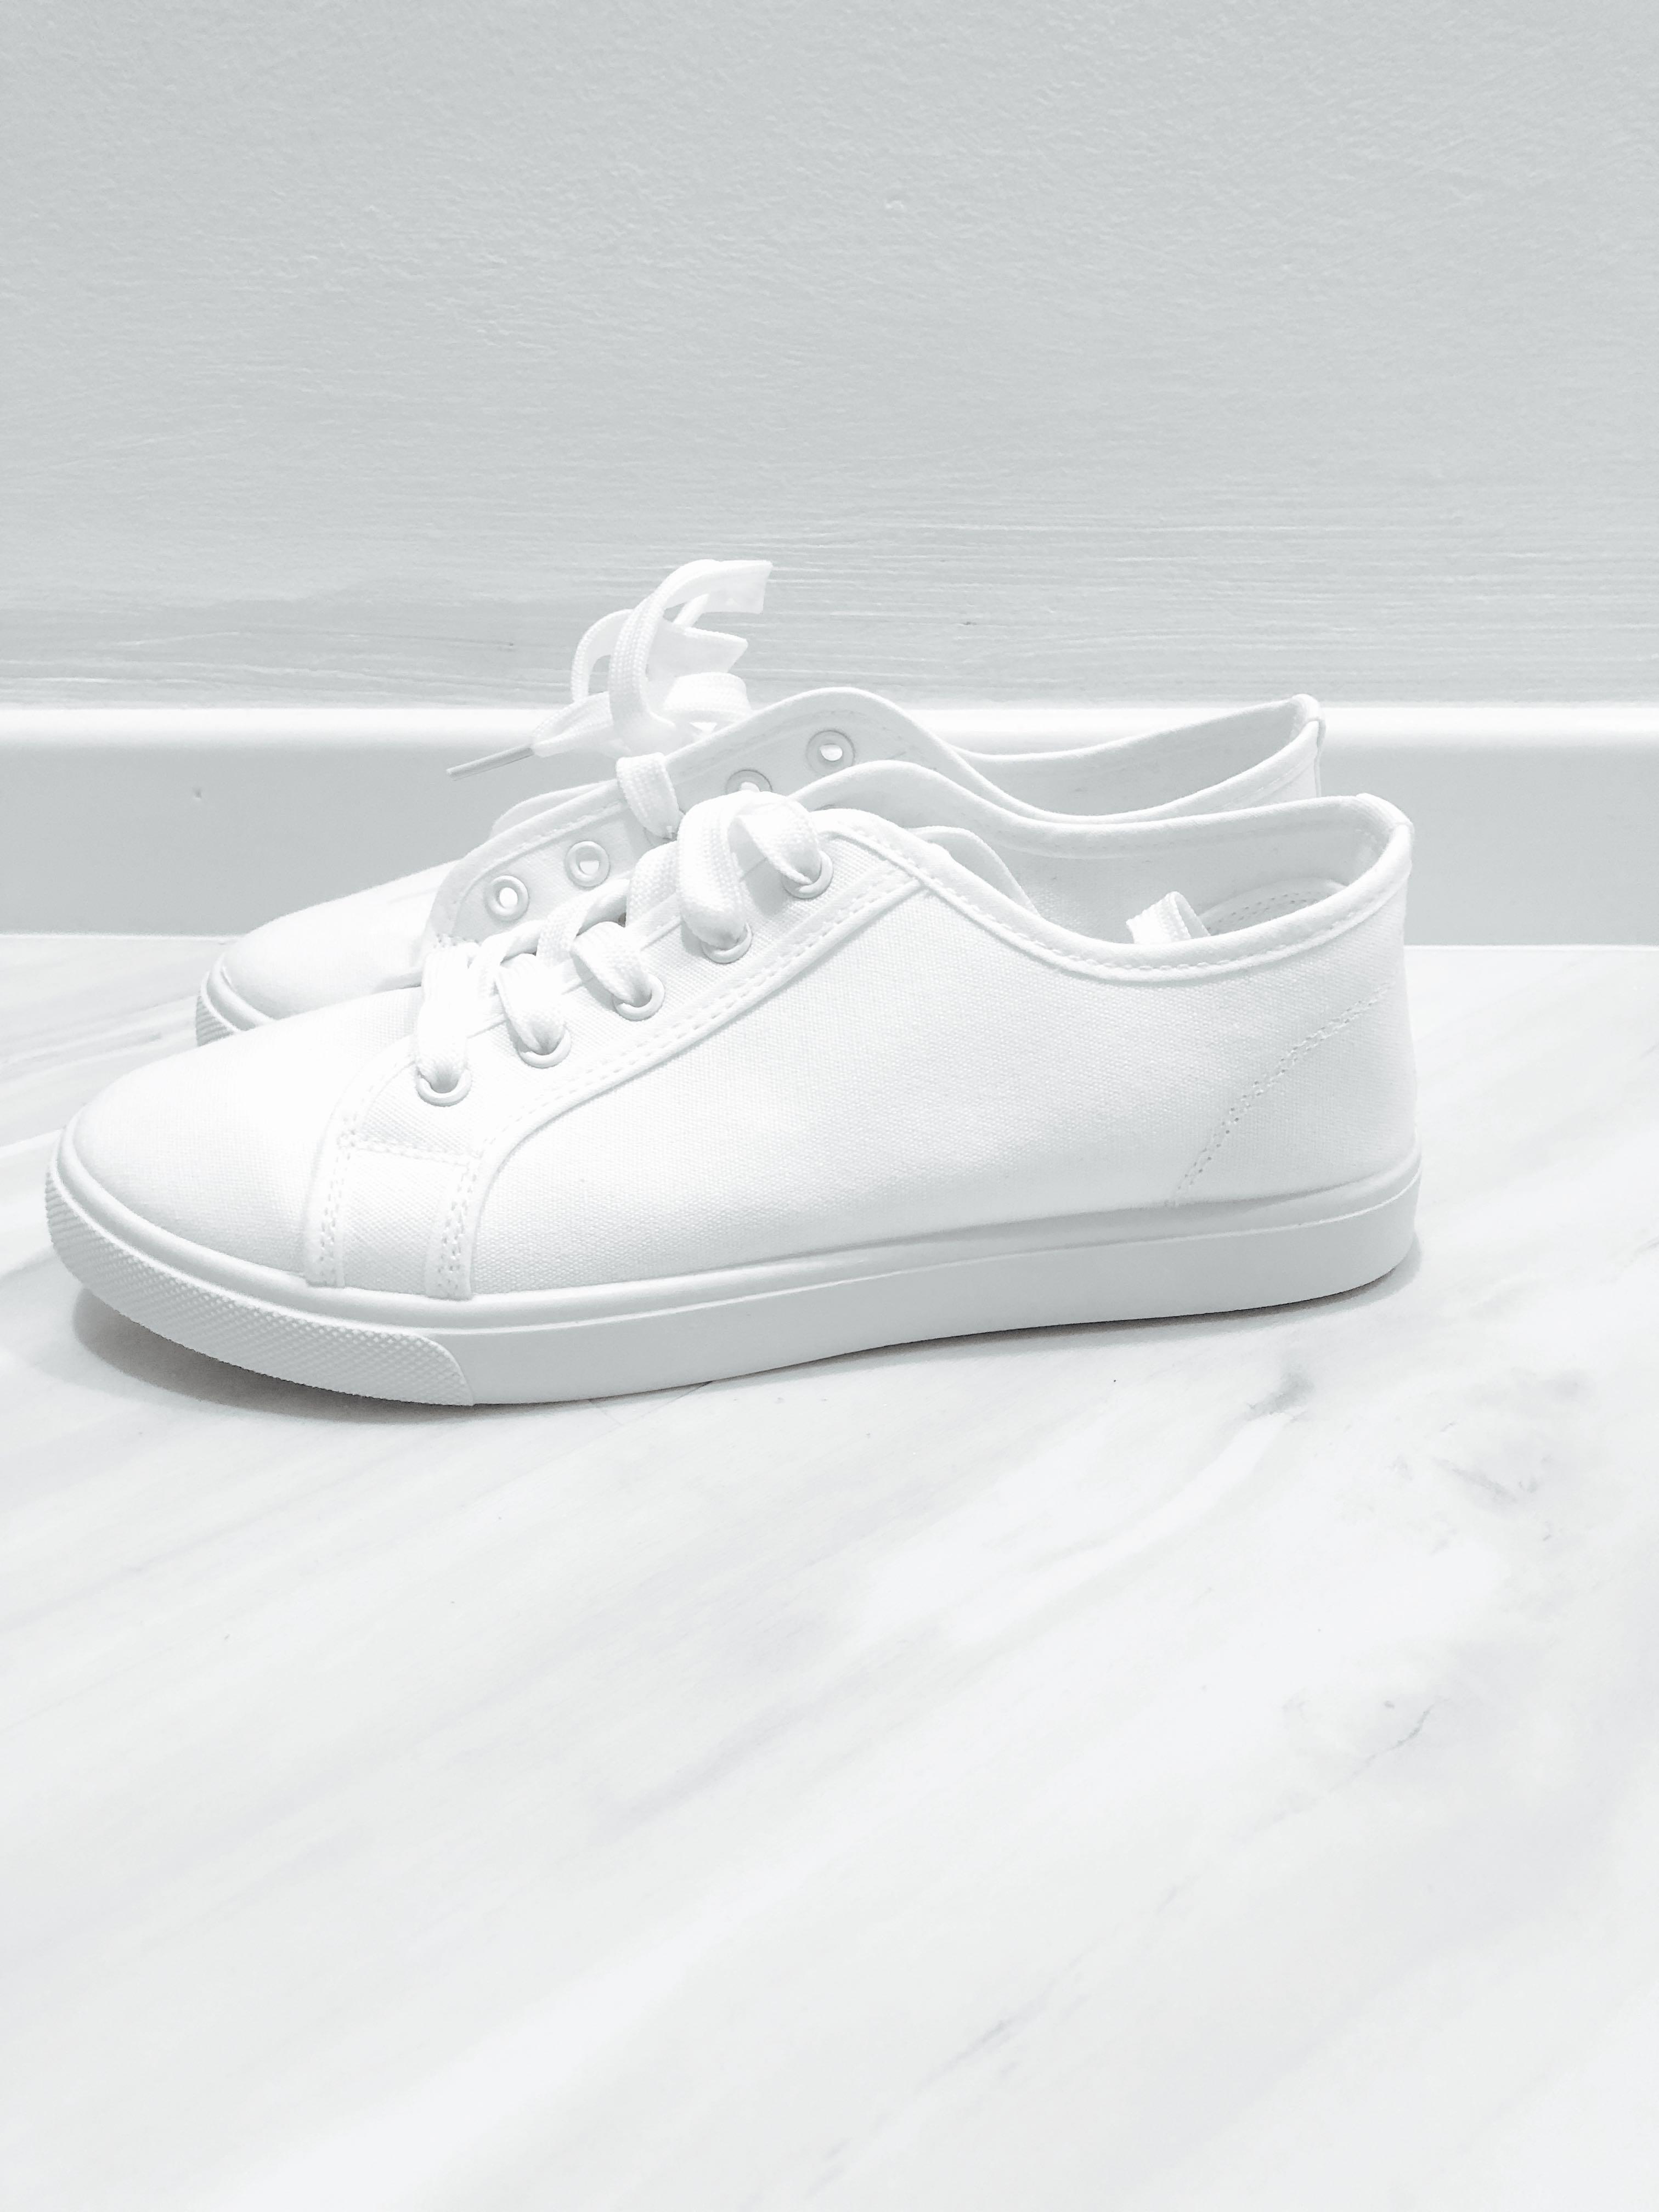 paragon white canvas shoes